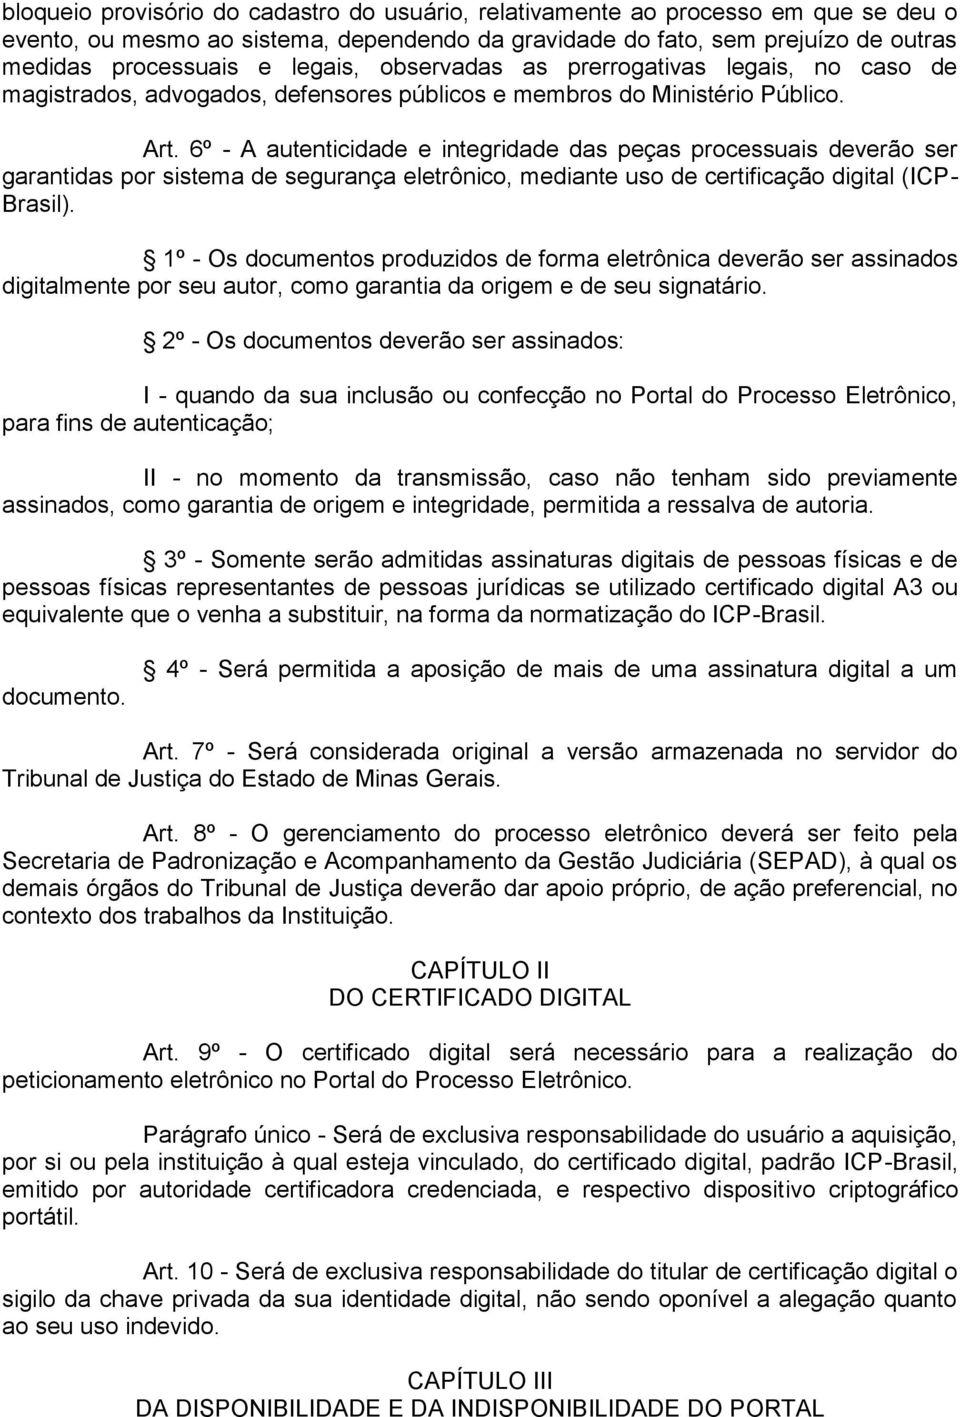 6º - A autenticidade e integridade das peças processuais deverão ser garantidas por sistema de segurança eletrônico, mediante uso de certificação digital (ICP- Brasil).